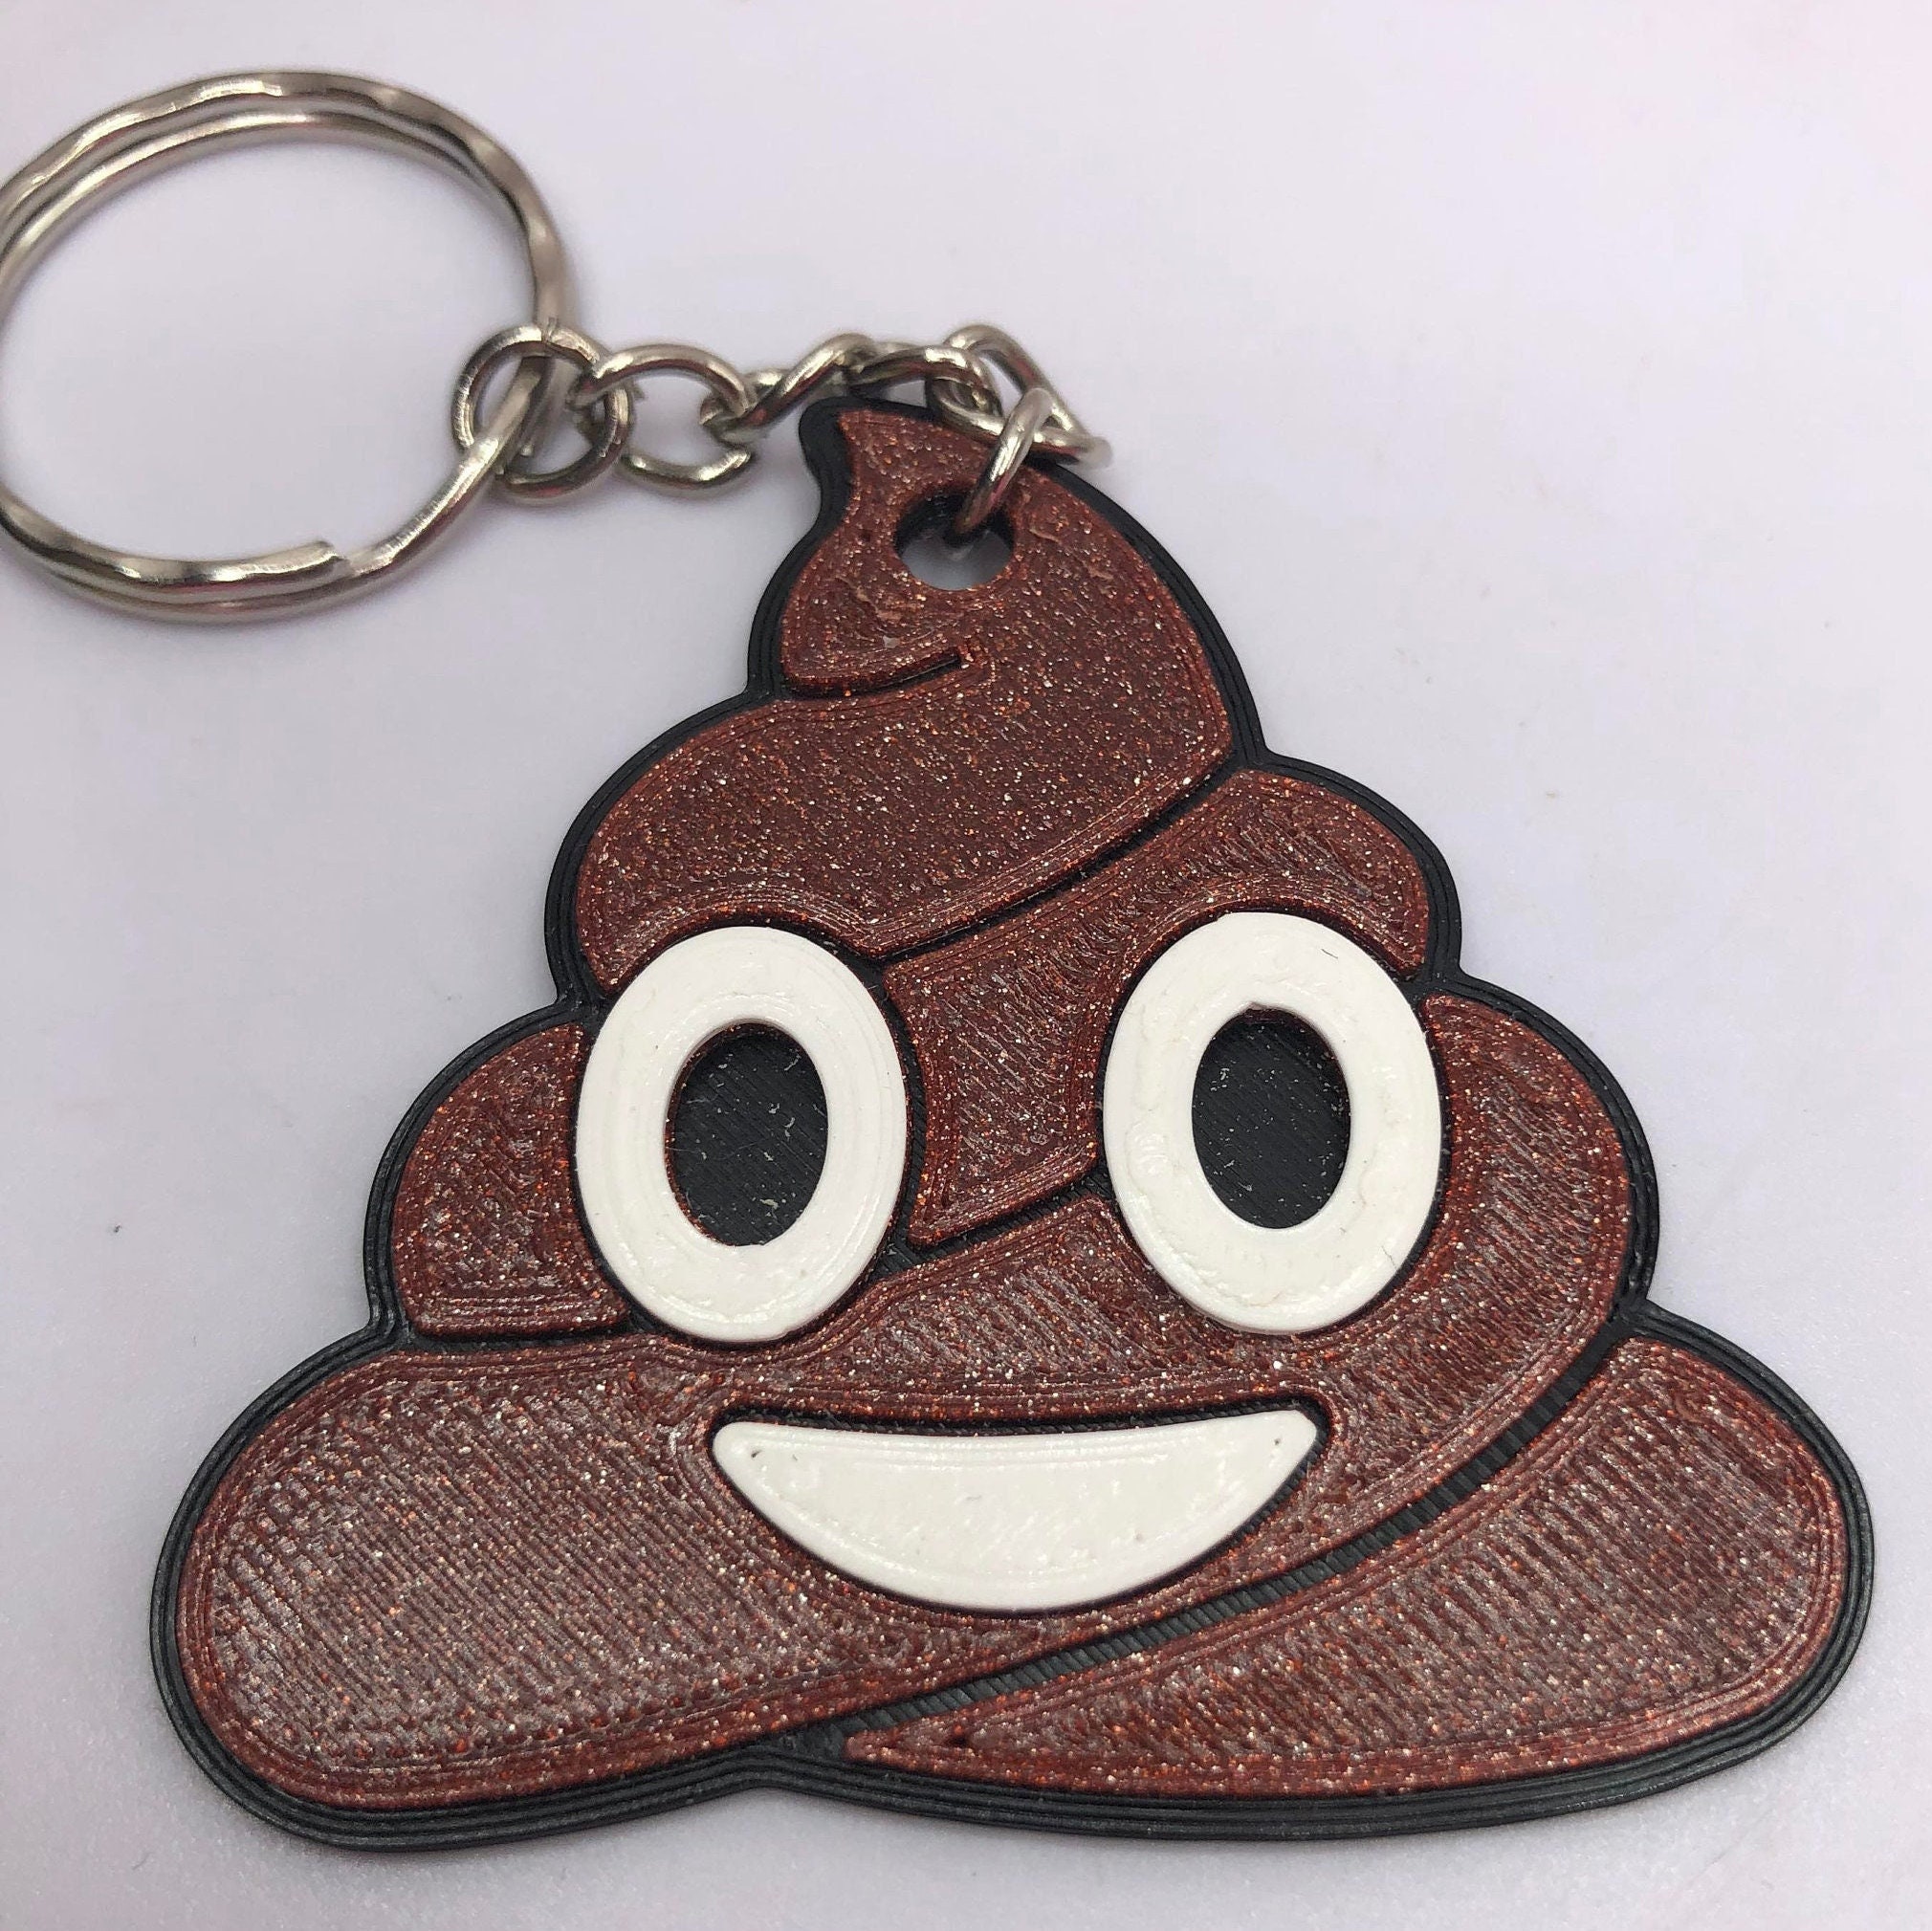 Poop emoji keychain